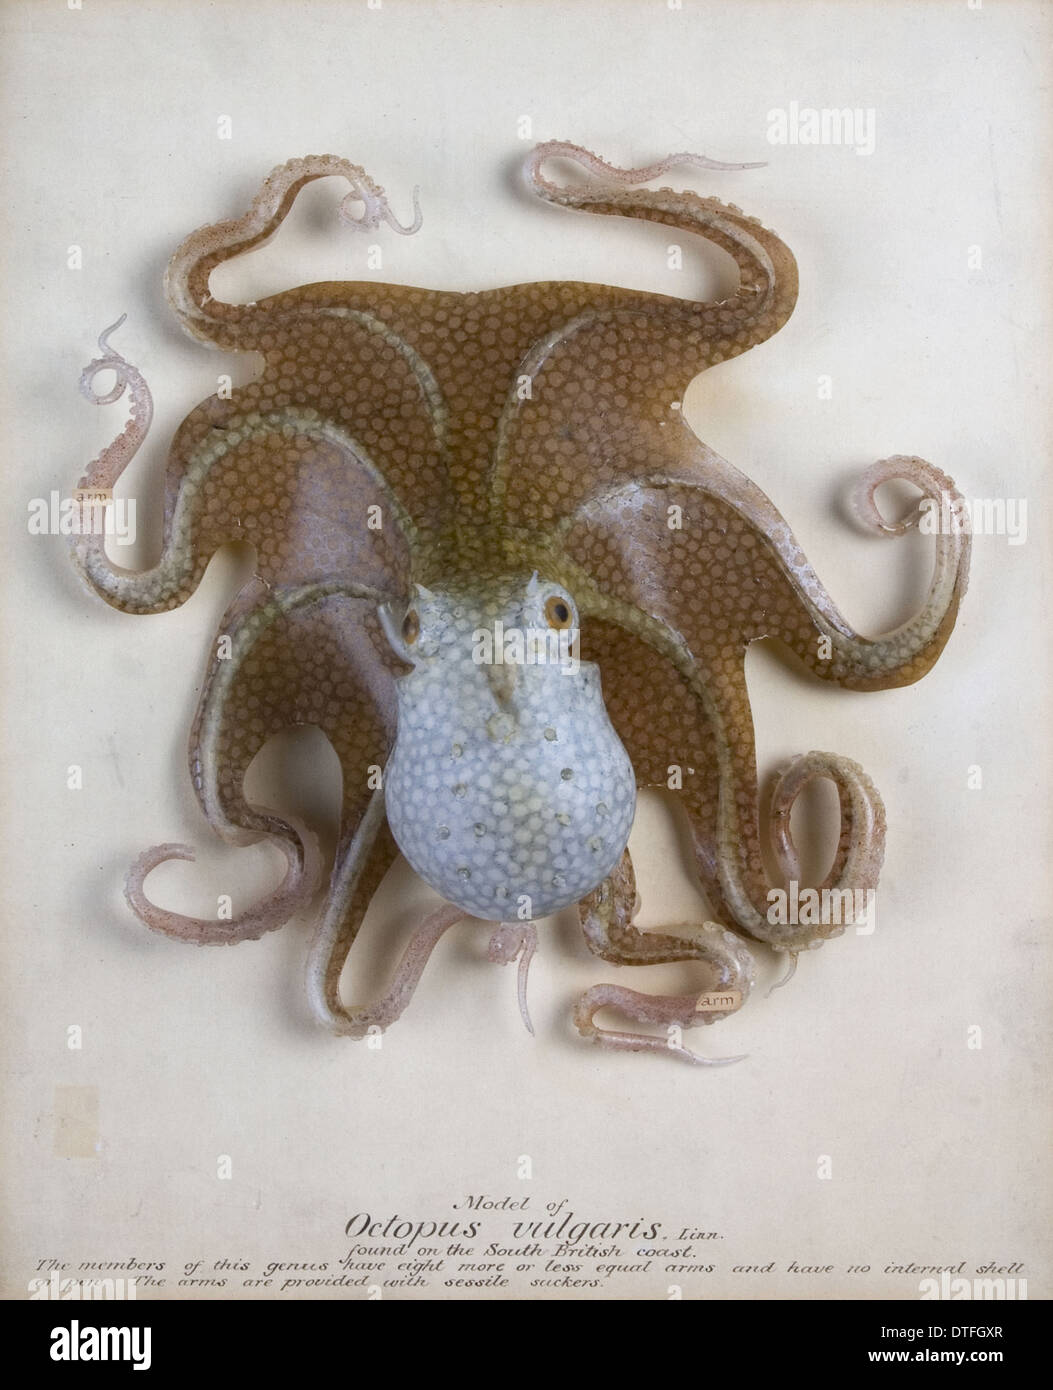 Octopus vulgaris, octopus Stock Photo